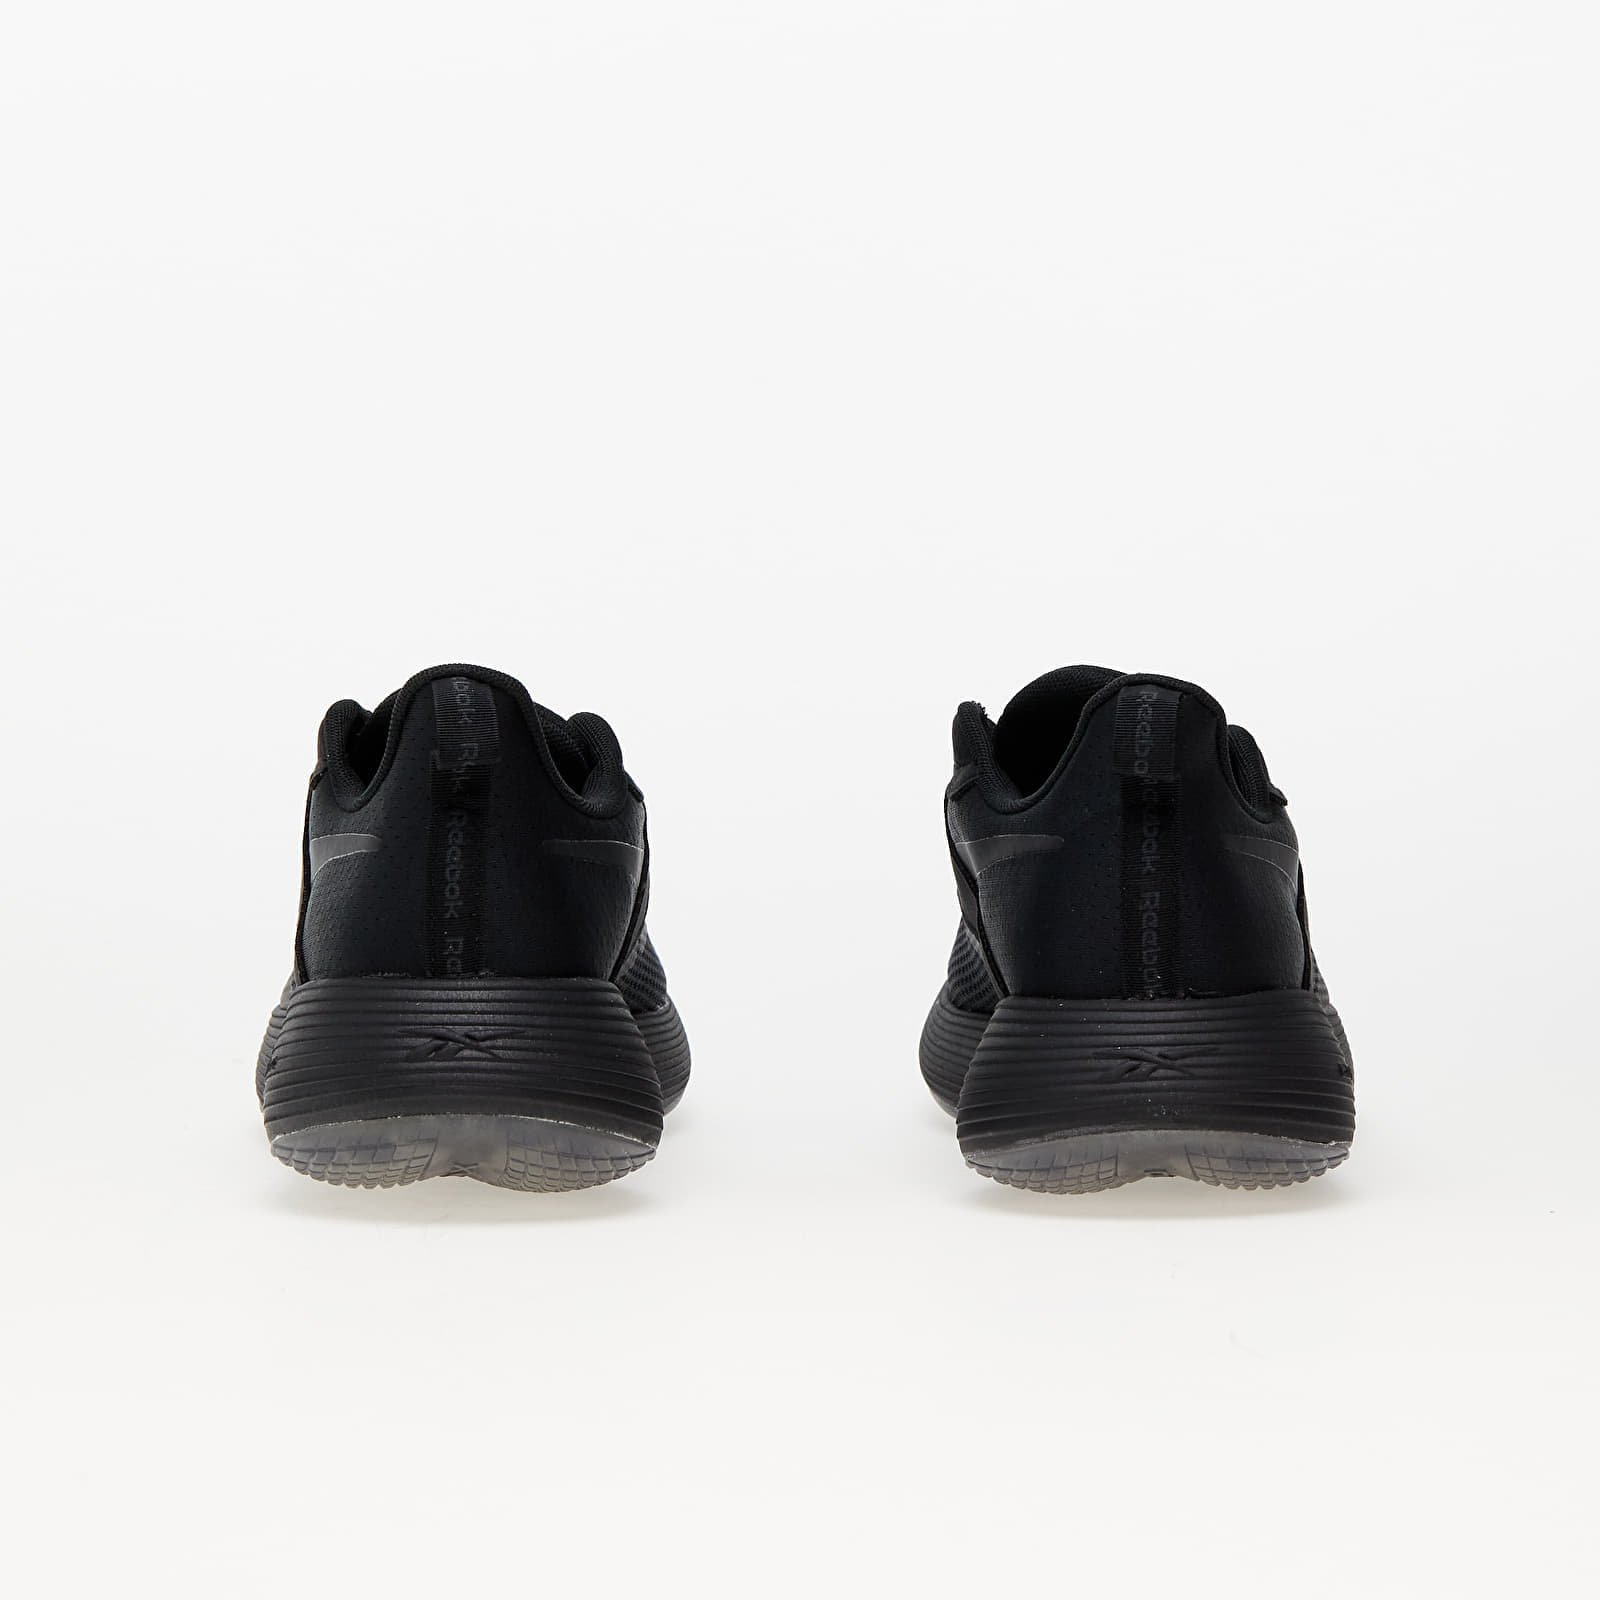 DMX Comfort + Black, Low-top sneakers